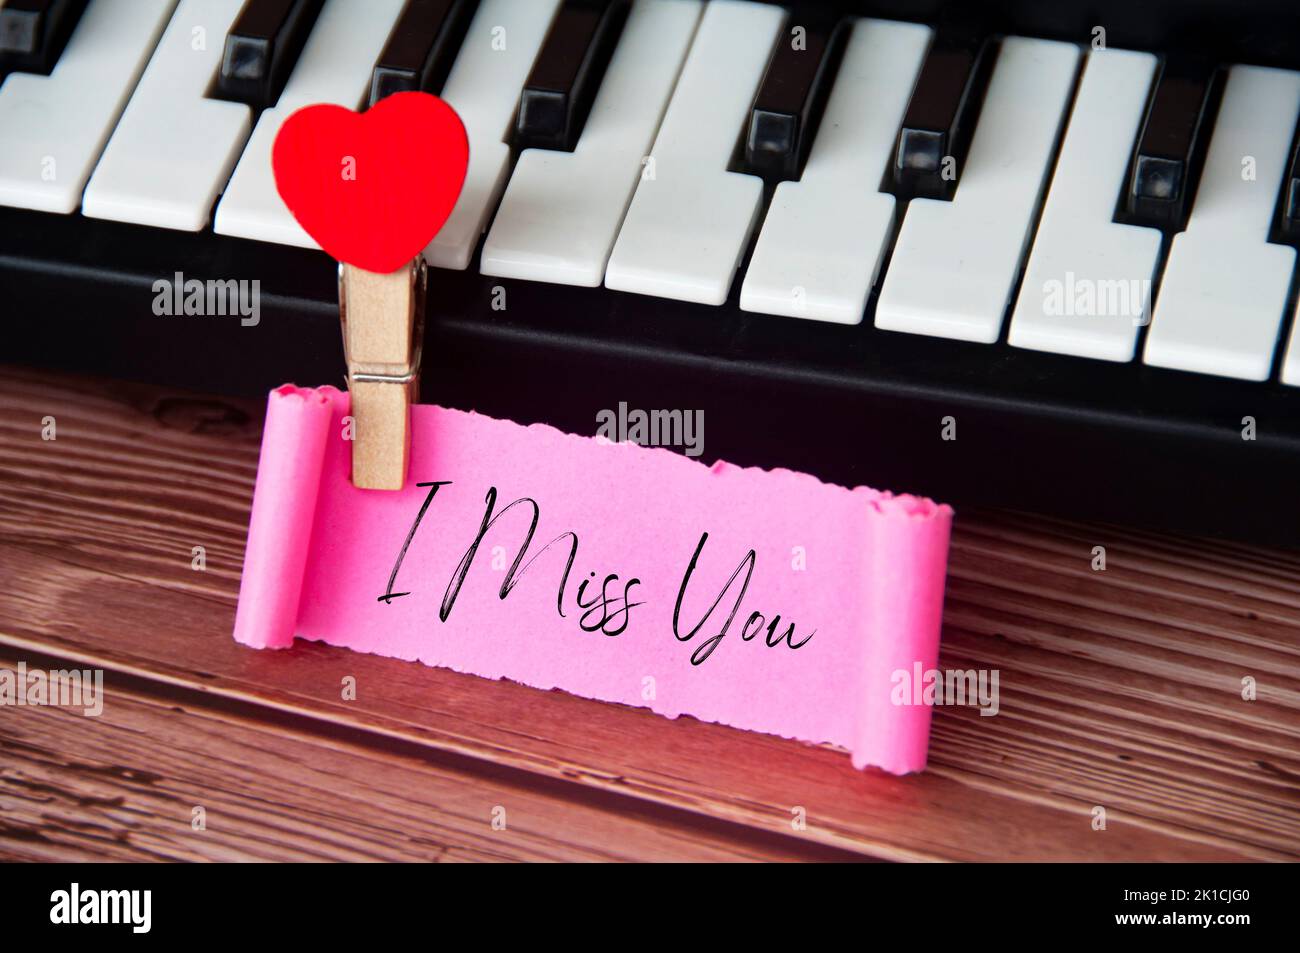 Ich vermisse Sie Text auf zerrissenen rosa Papier mit Tastatur Hintergrund. Romantik und Beziehungskonzept. Stockfoto